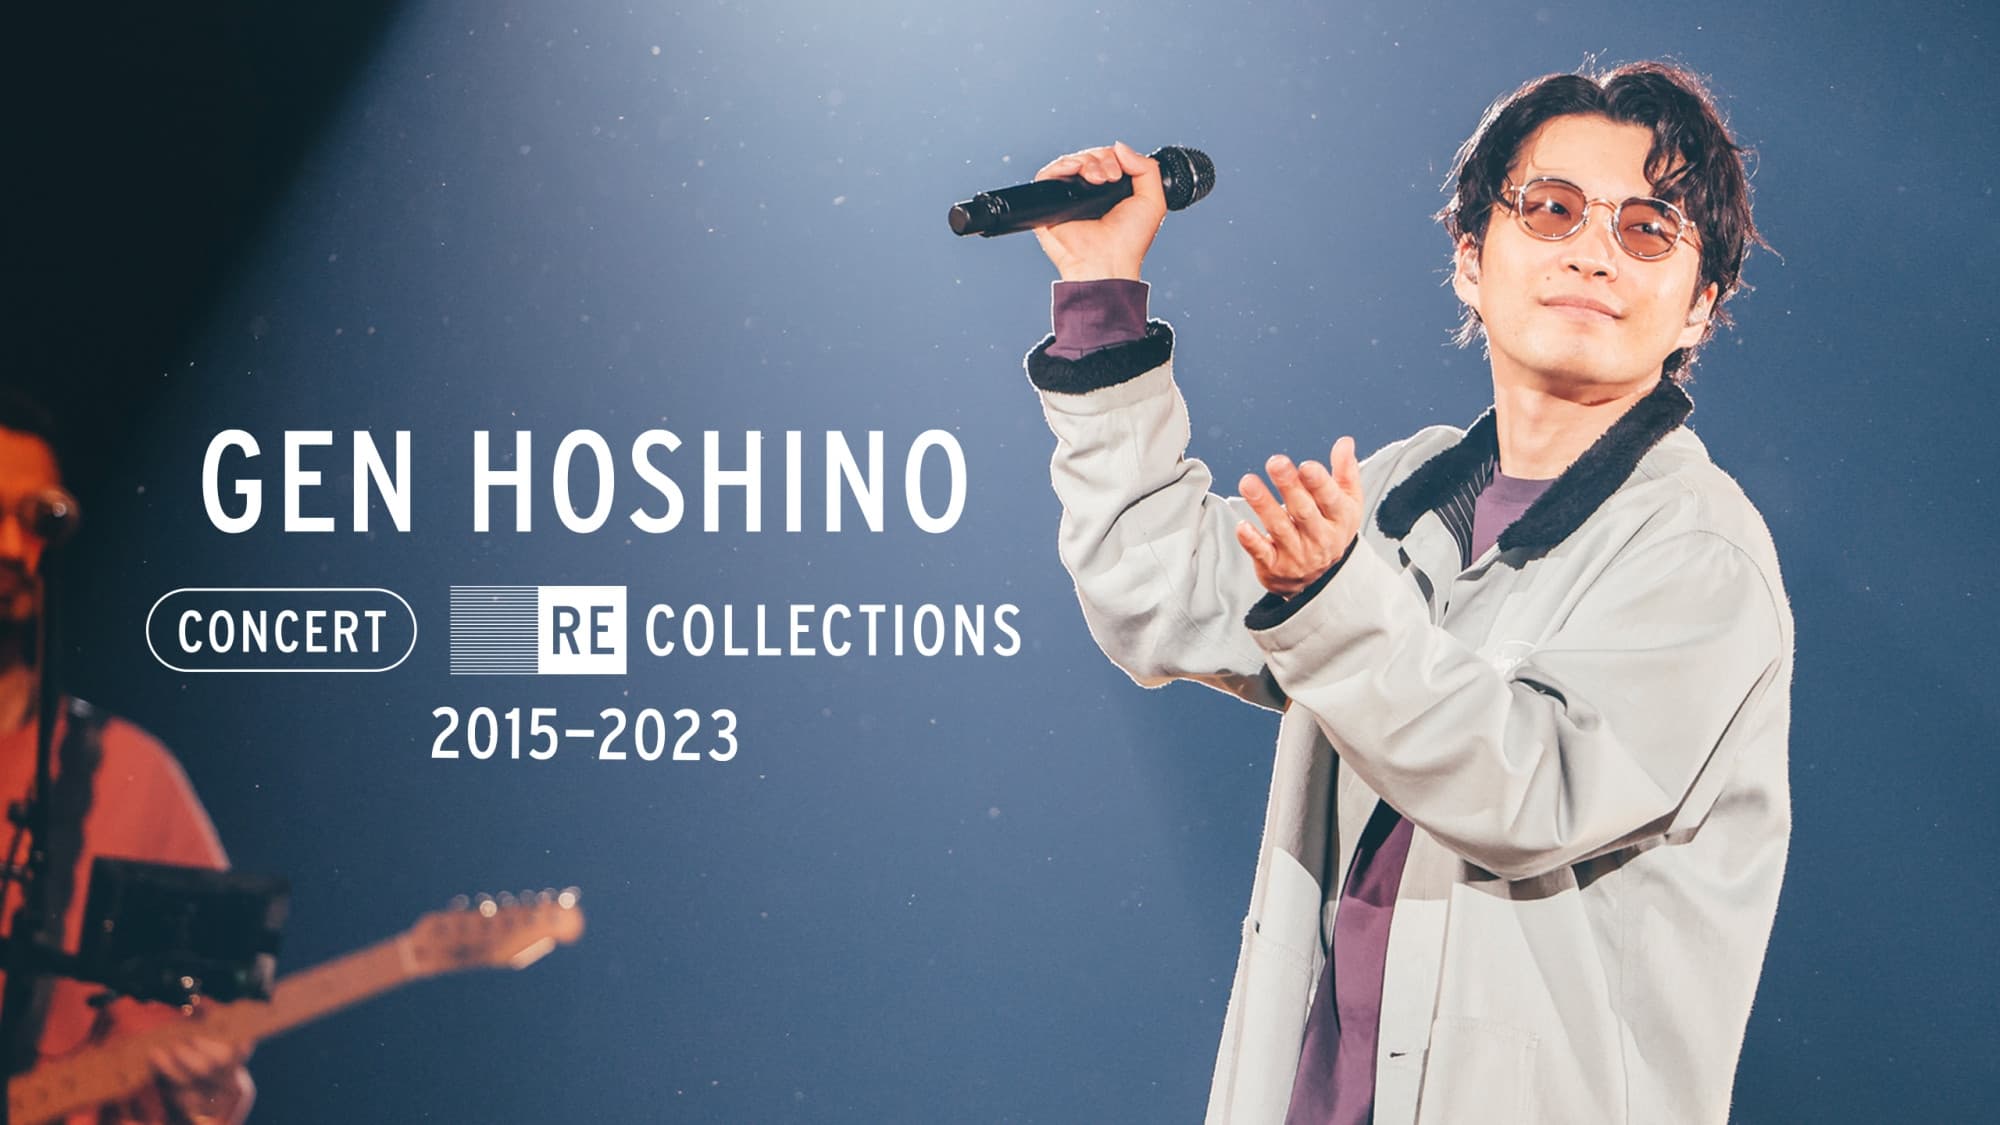 Xem Phim Hoshino Gen: Tuyển tập hòa nhạc 2015-2023 (Gen Hoshino Concert Recollections 2015-2023)